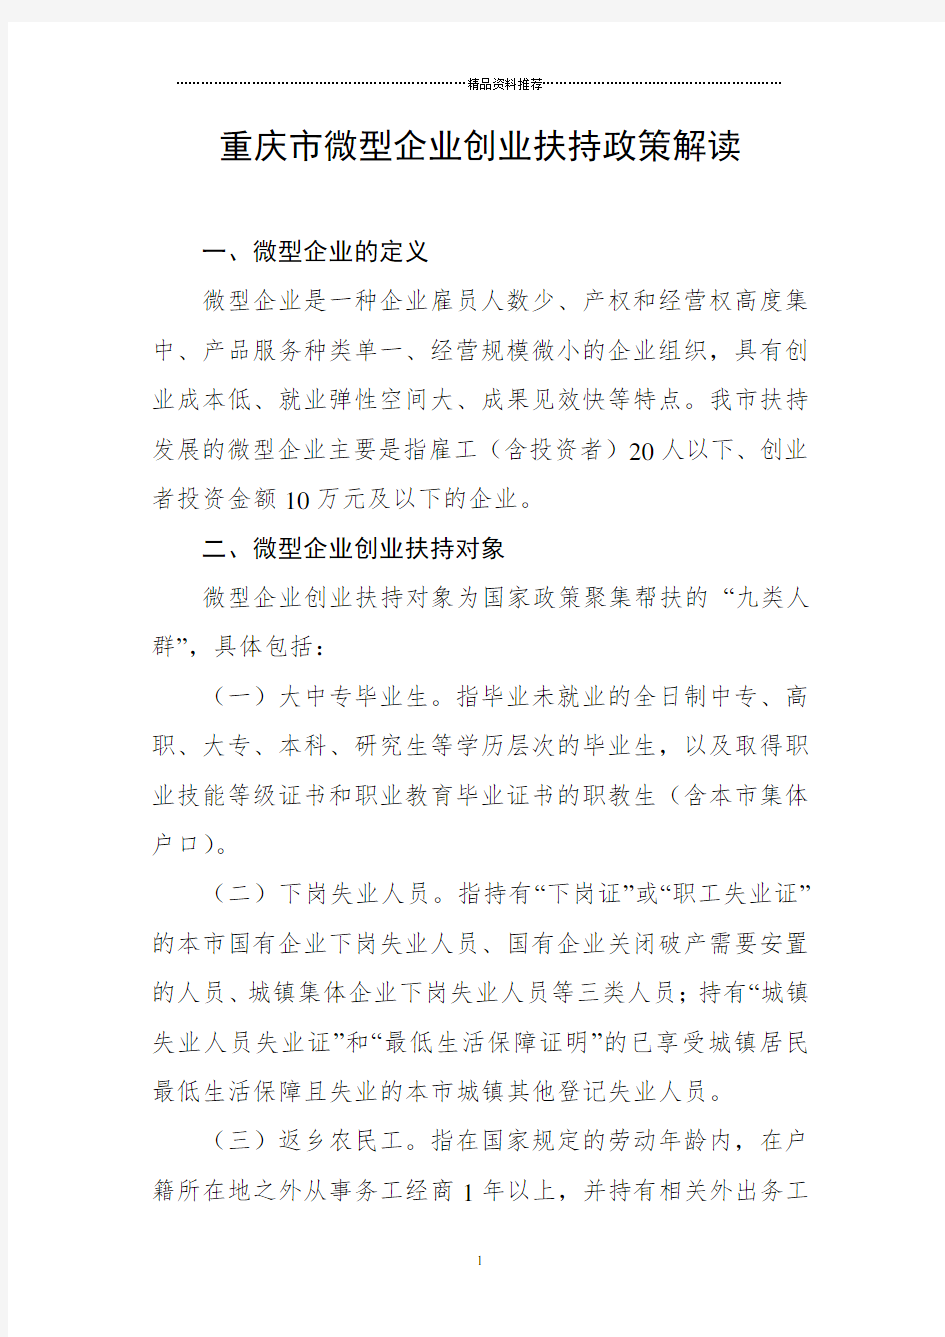 重庆市微型企业创业扶持政策解读